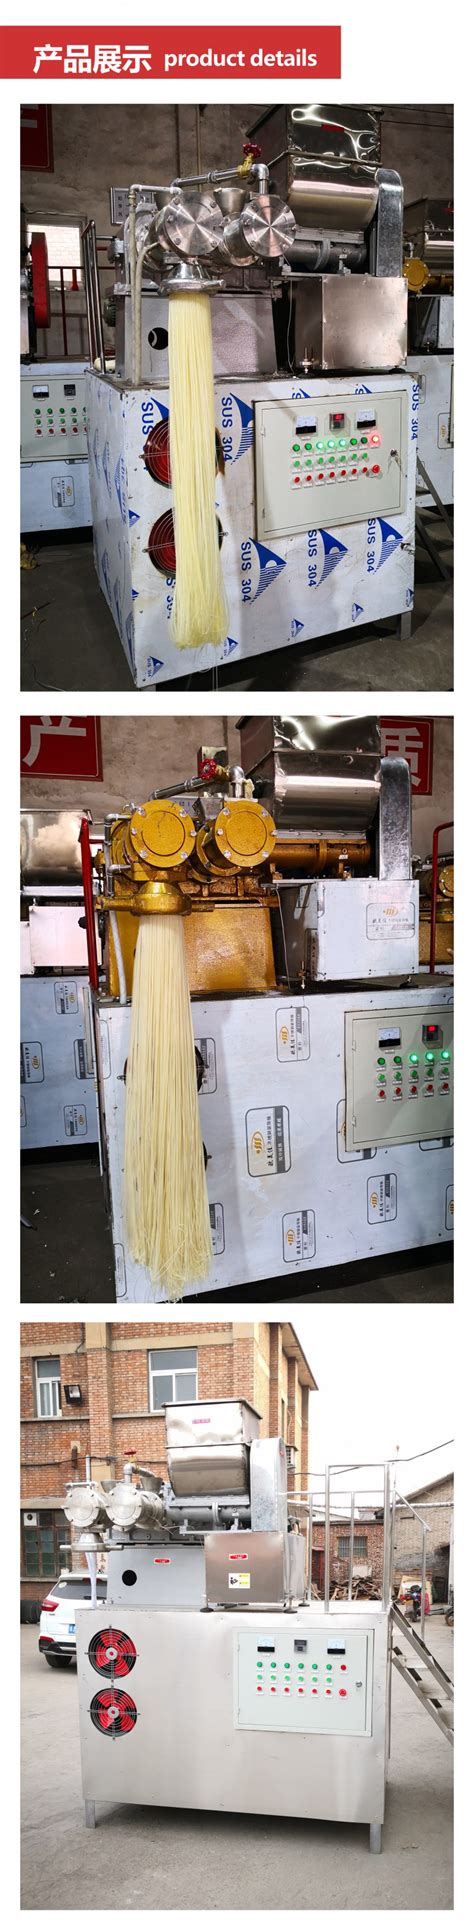 过桥米线生产线_—中国食品机械设备供应网